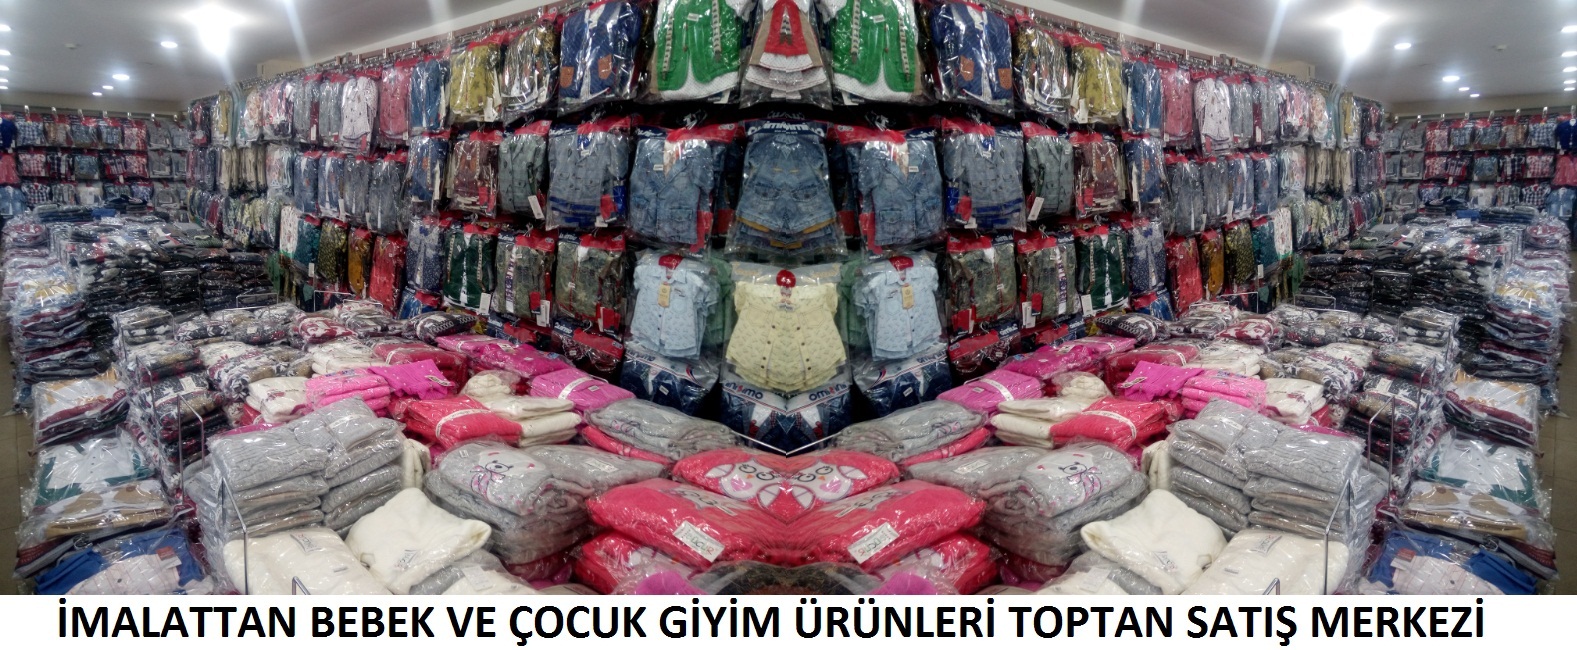 Одежда Интернет Магазин Турция Опт